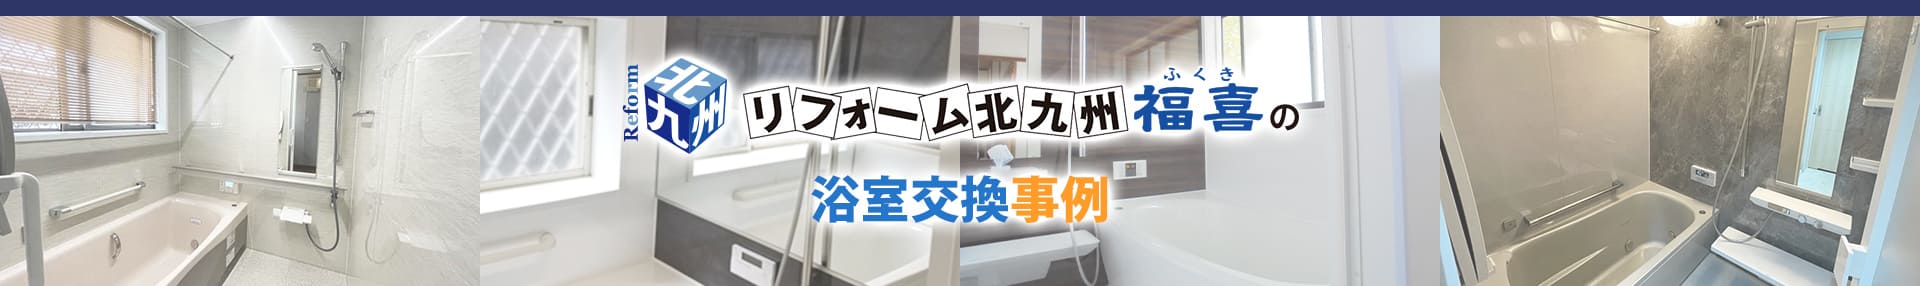 リフォーム北九州福喜の浴室交換事例